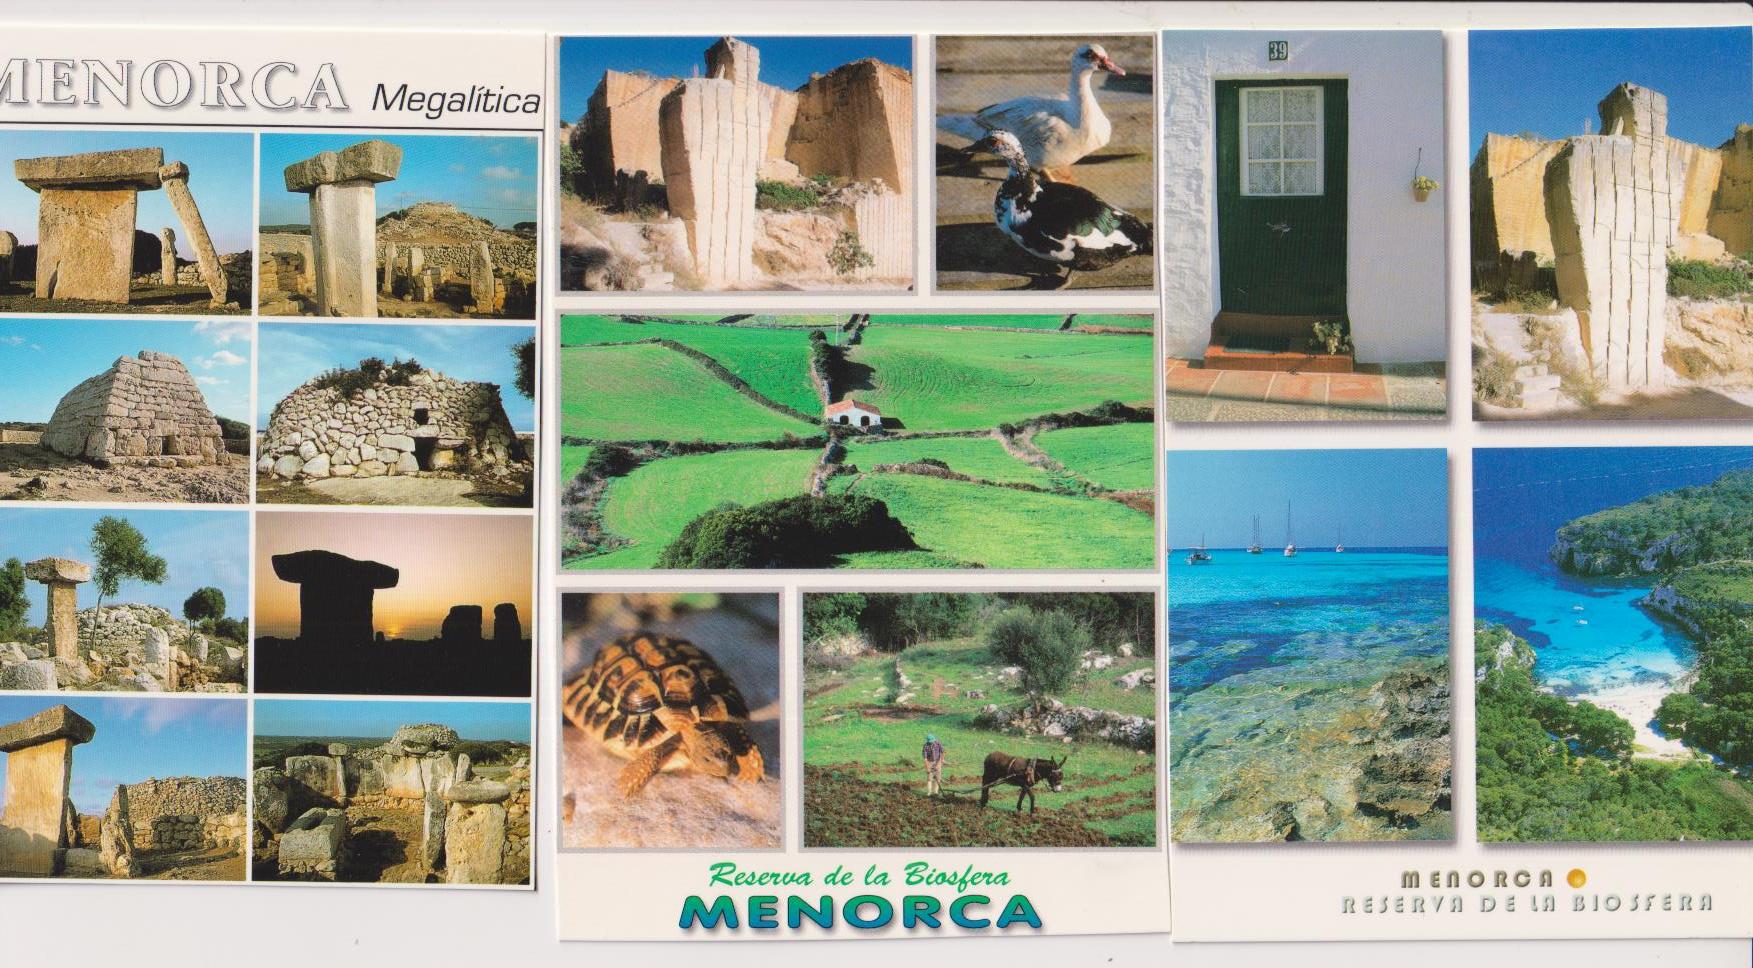 Menorca. Lote de 3 postales: Megalítica y Reserva de la Biosfera (2)